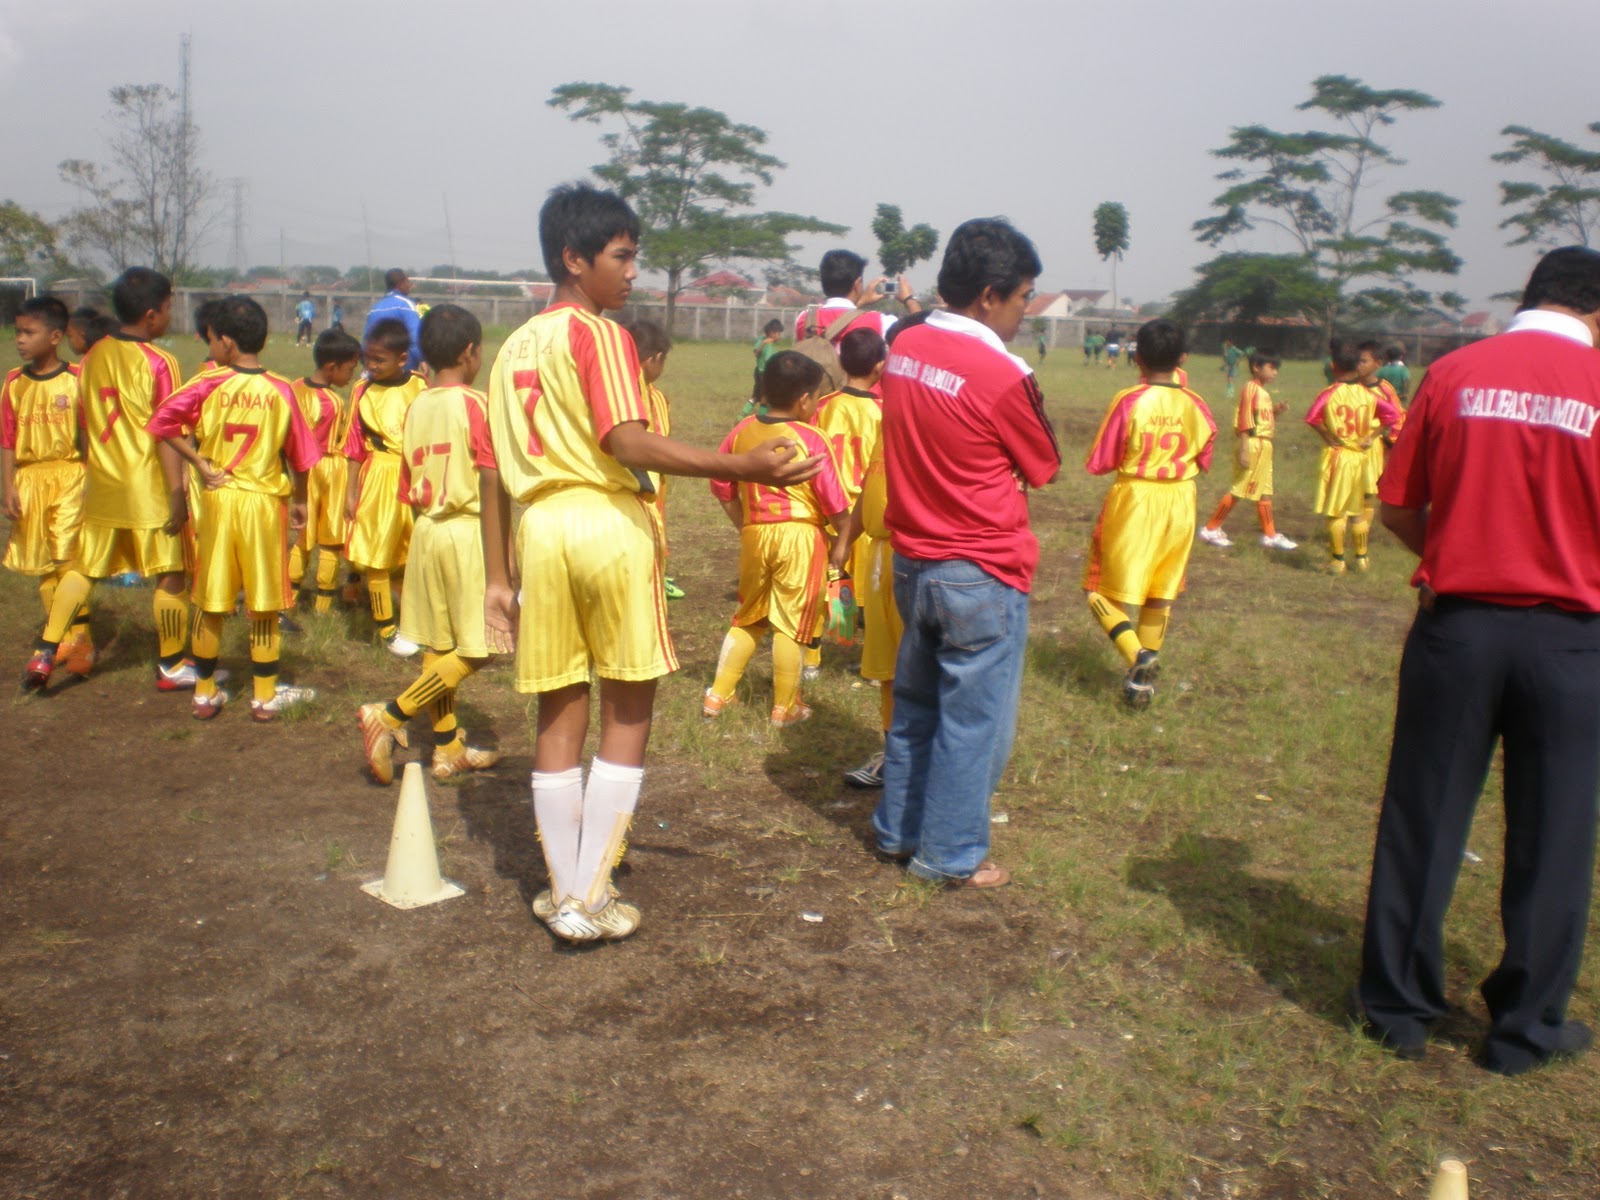 SSB Salfas Soccer Tour in SSB UNI  Bandung 